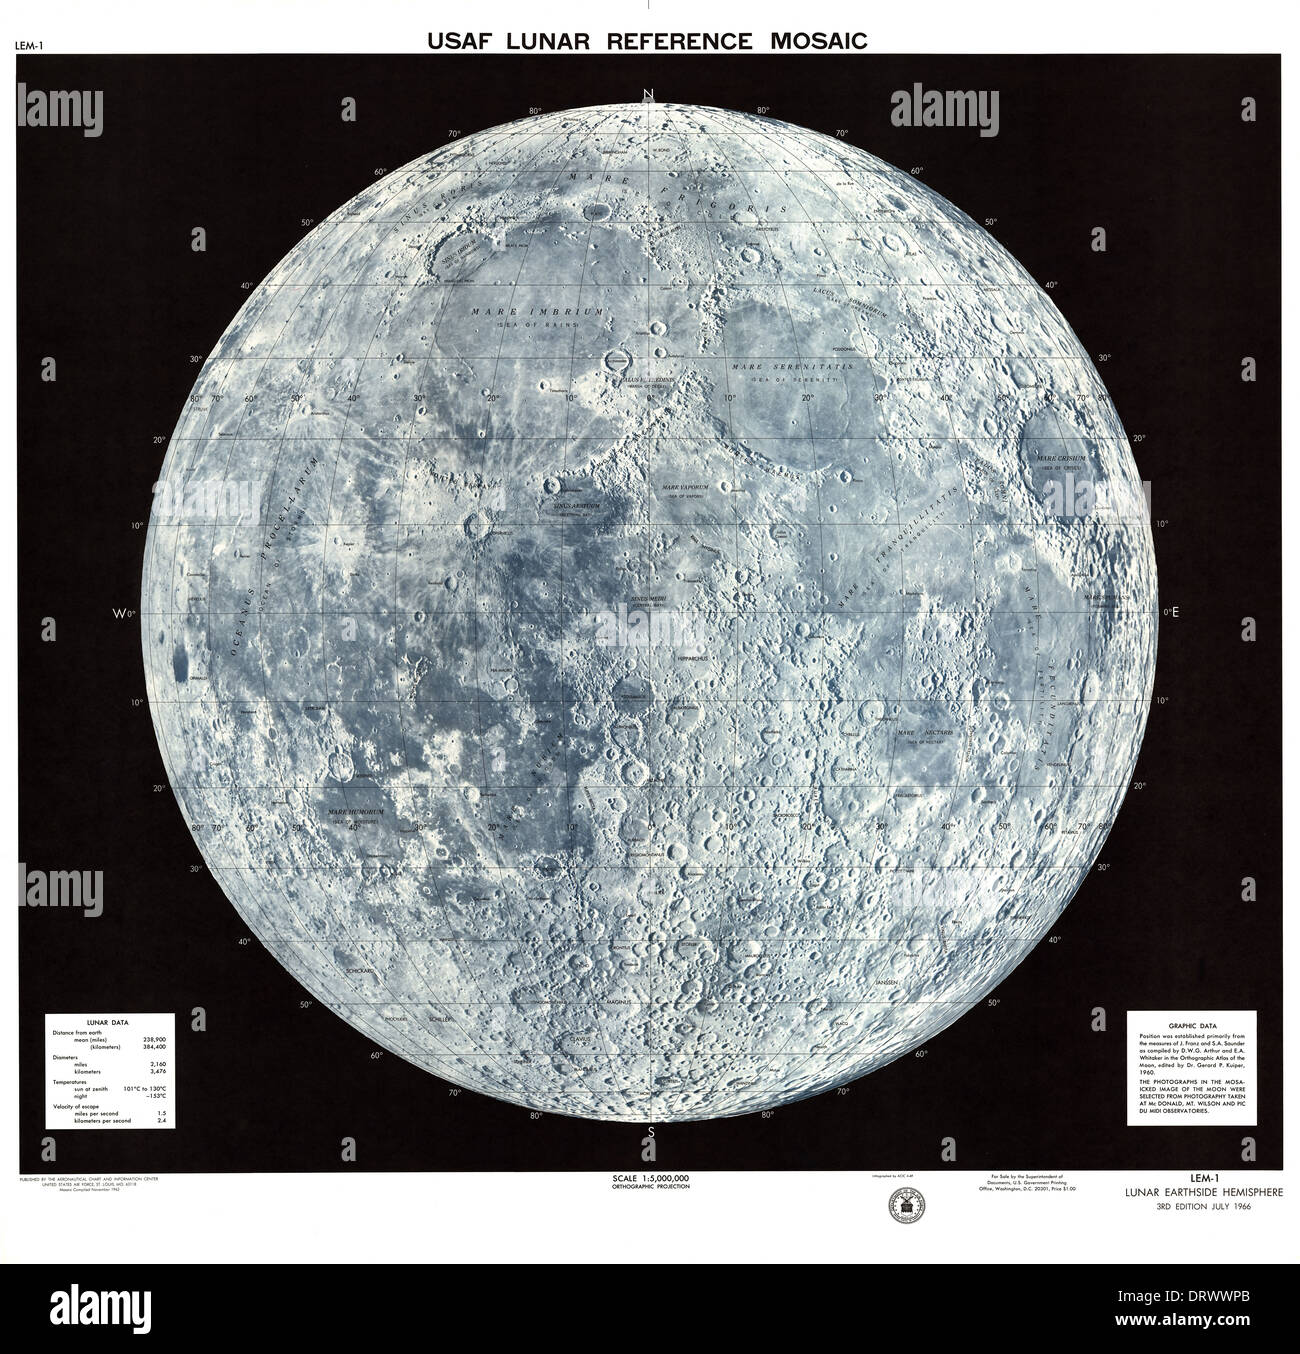 Vereinigte Staaten Luftwaffe Lunar Referenz Mosaik Karte 1962 Skala 1:5000000 Orthographische Projektion zeigt Perinatalmedizin Hemisphäre Stockfoto